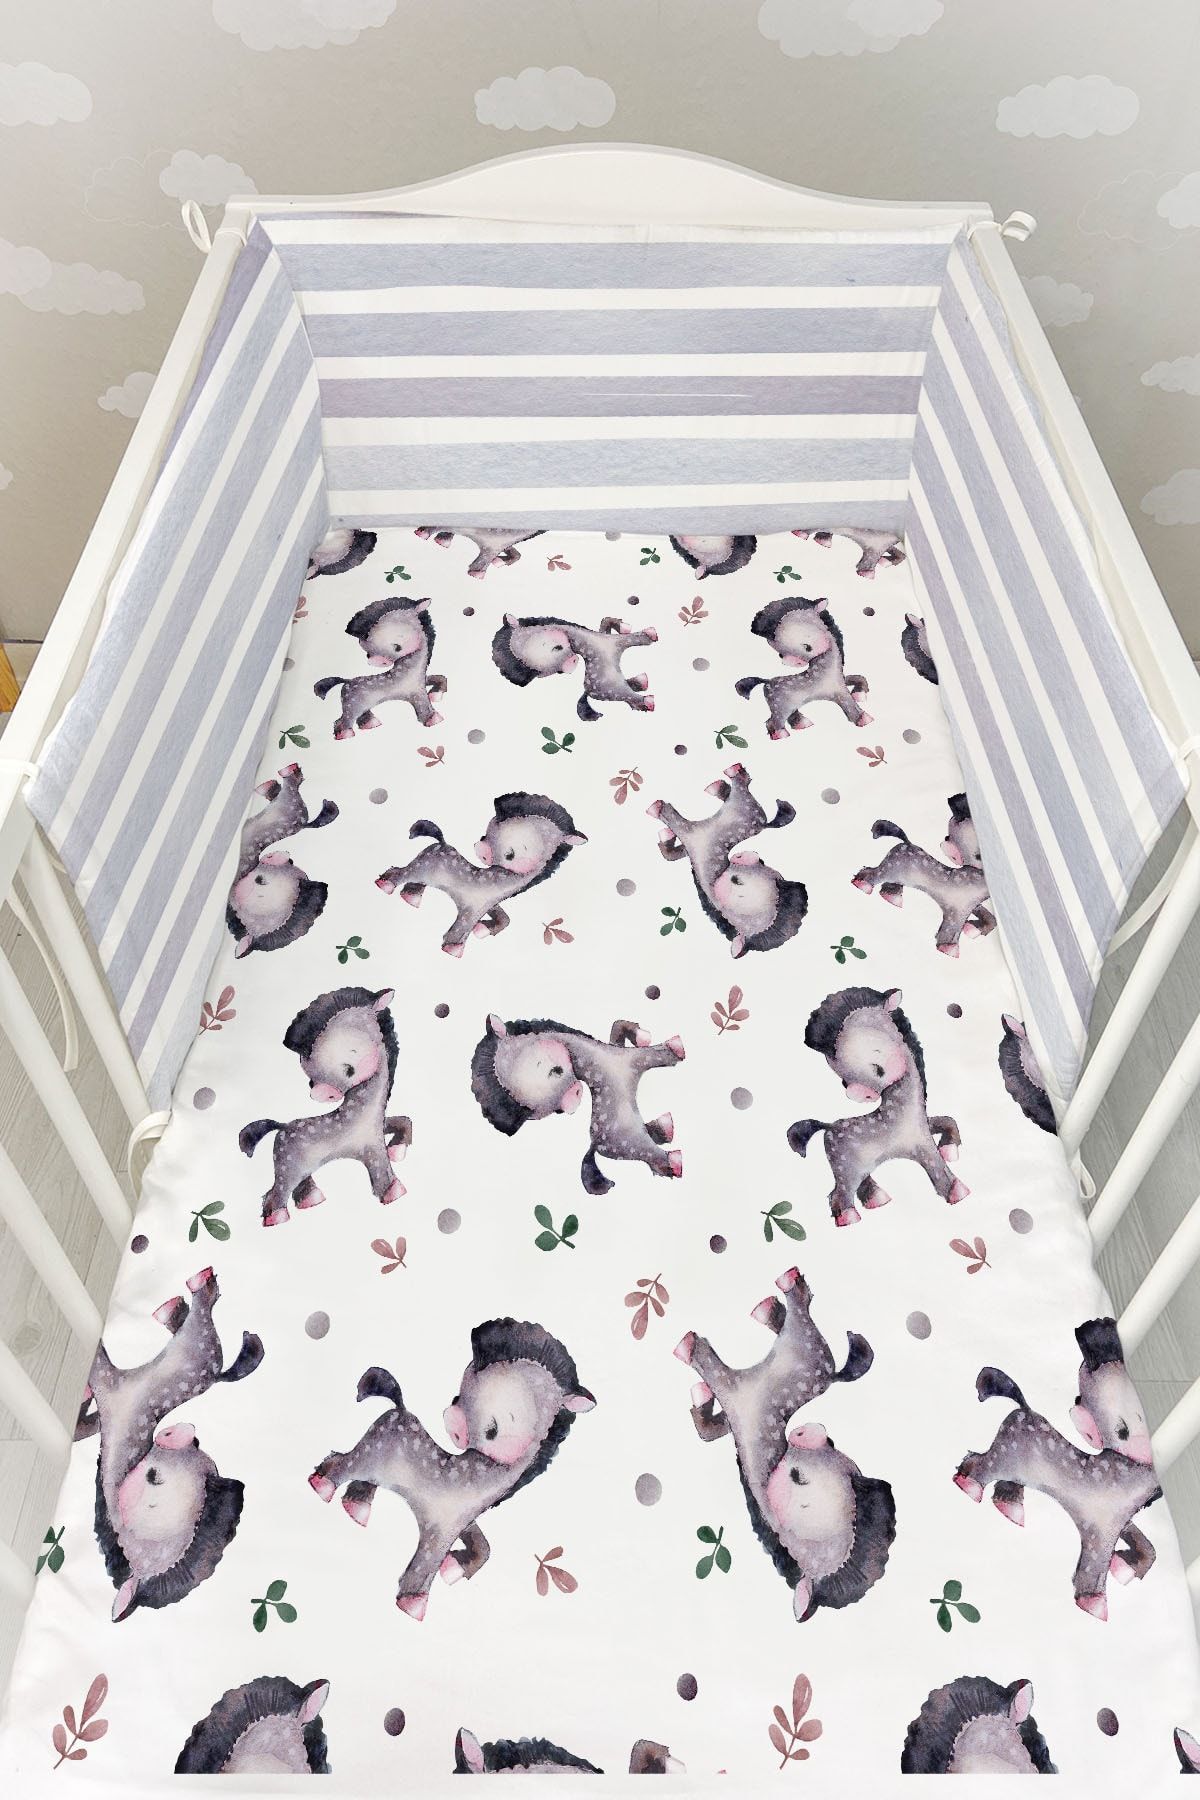 Tuğba Kuğu Bebek Başucu Koruyucu ve Baskılı Çarşaflı Uyku Seti - Pure Baby Serisi - Sevimli Midilli